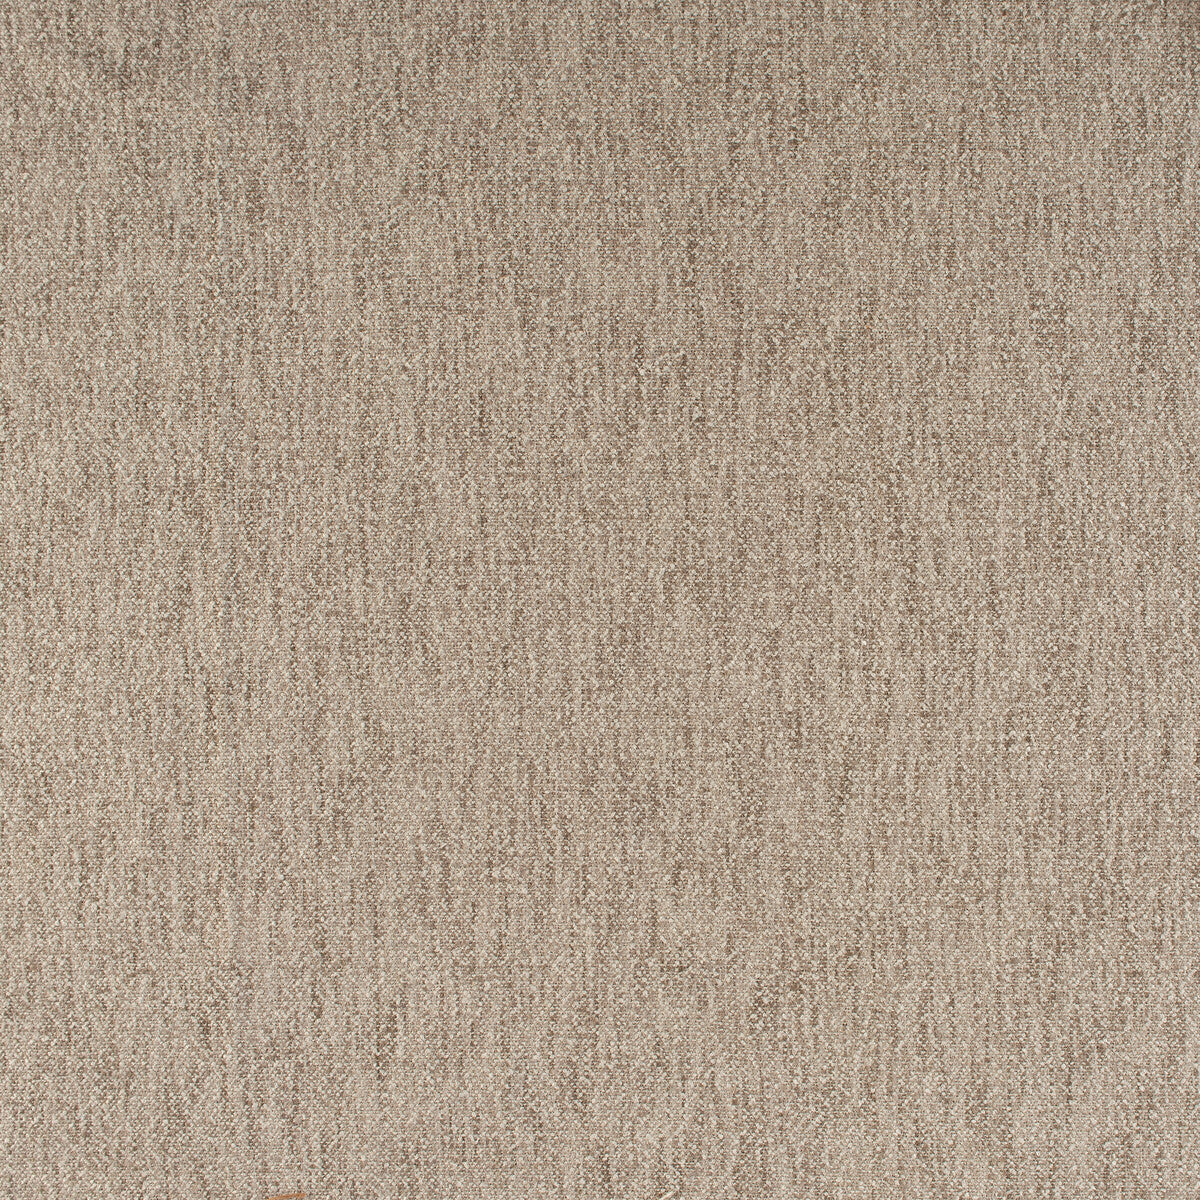 Kravet Basics fabric in 35455-106 color - pattern 35455.106.0 - by Kravet Basics